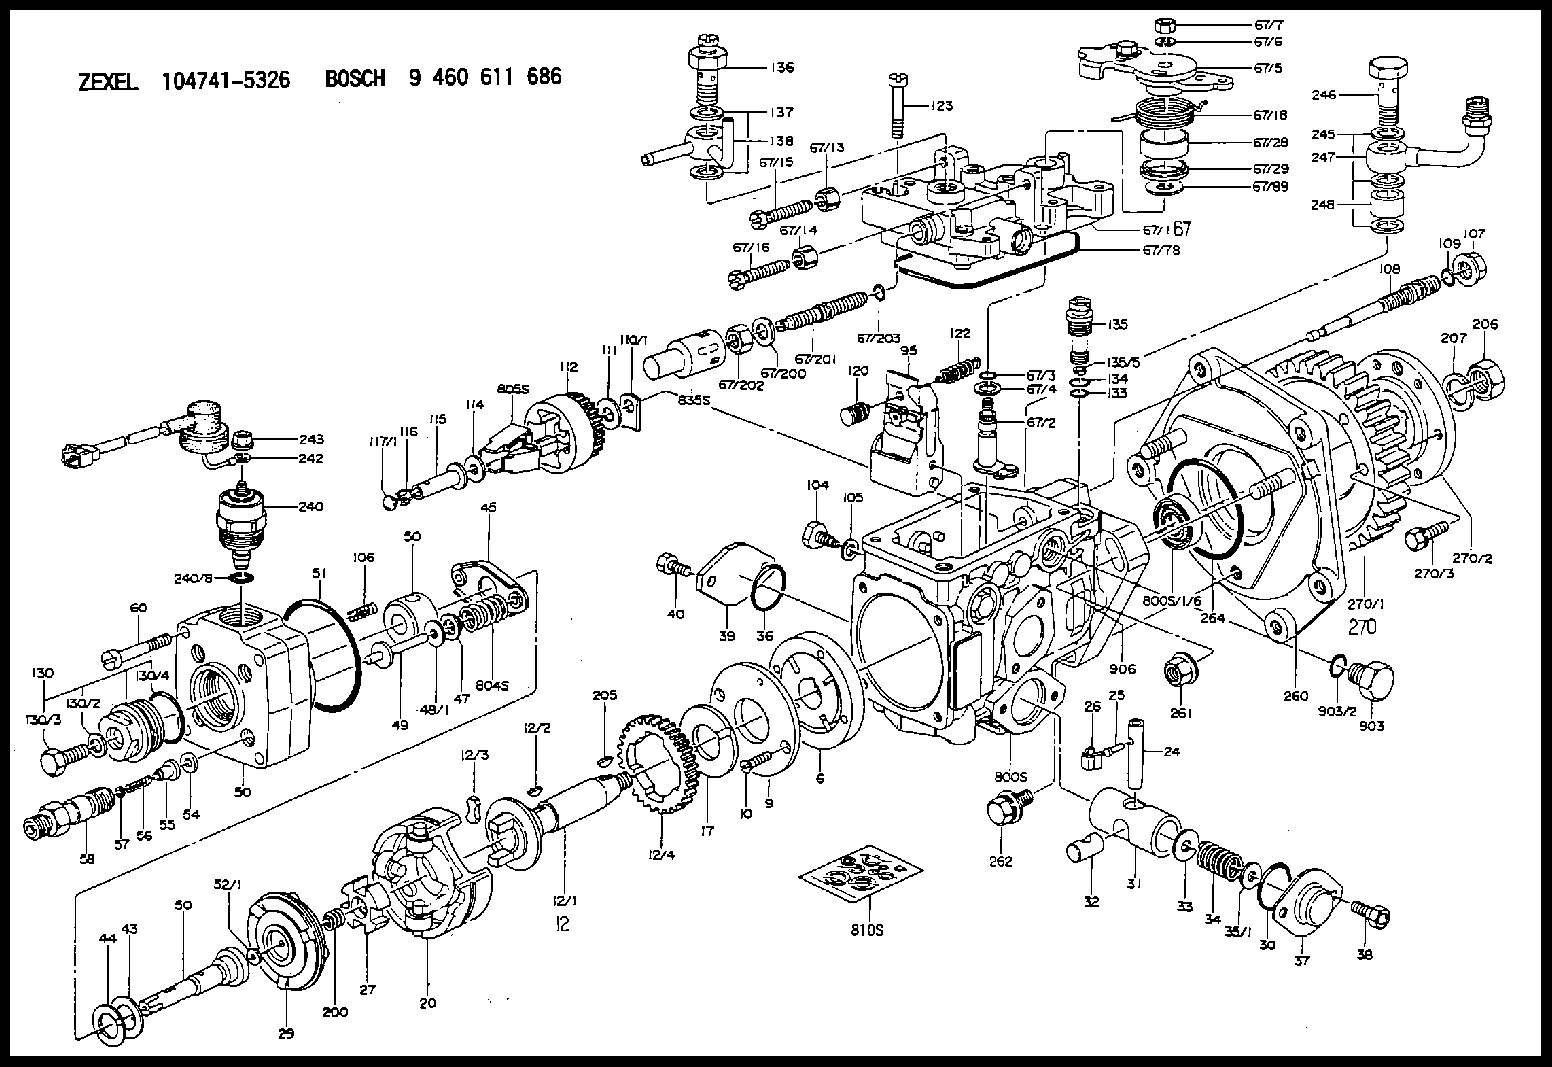 Bosch Vp44 Injection Pump Wiring Diagram